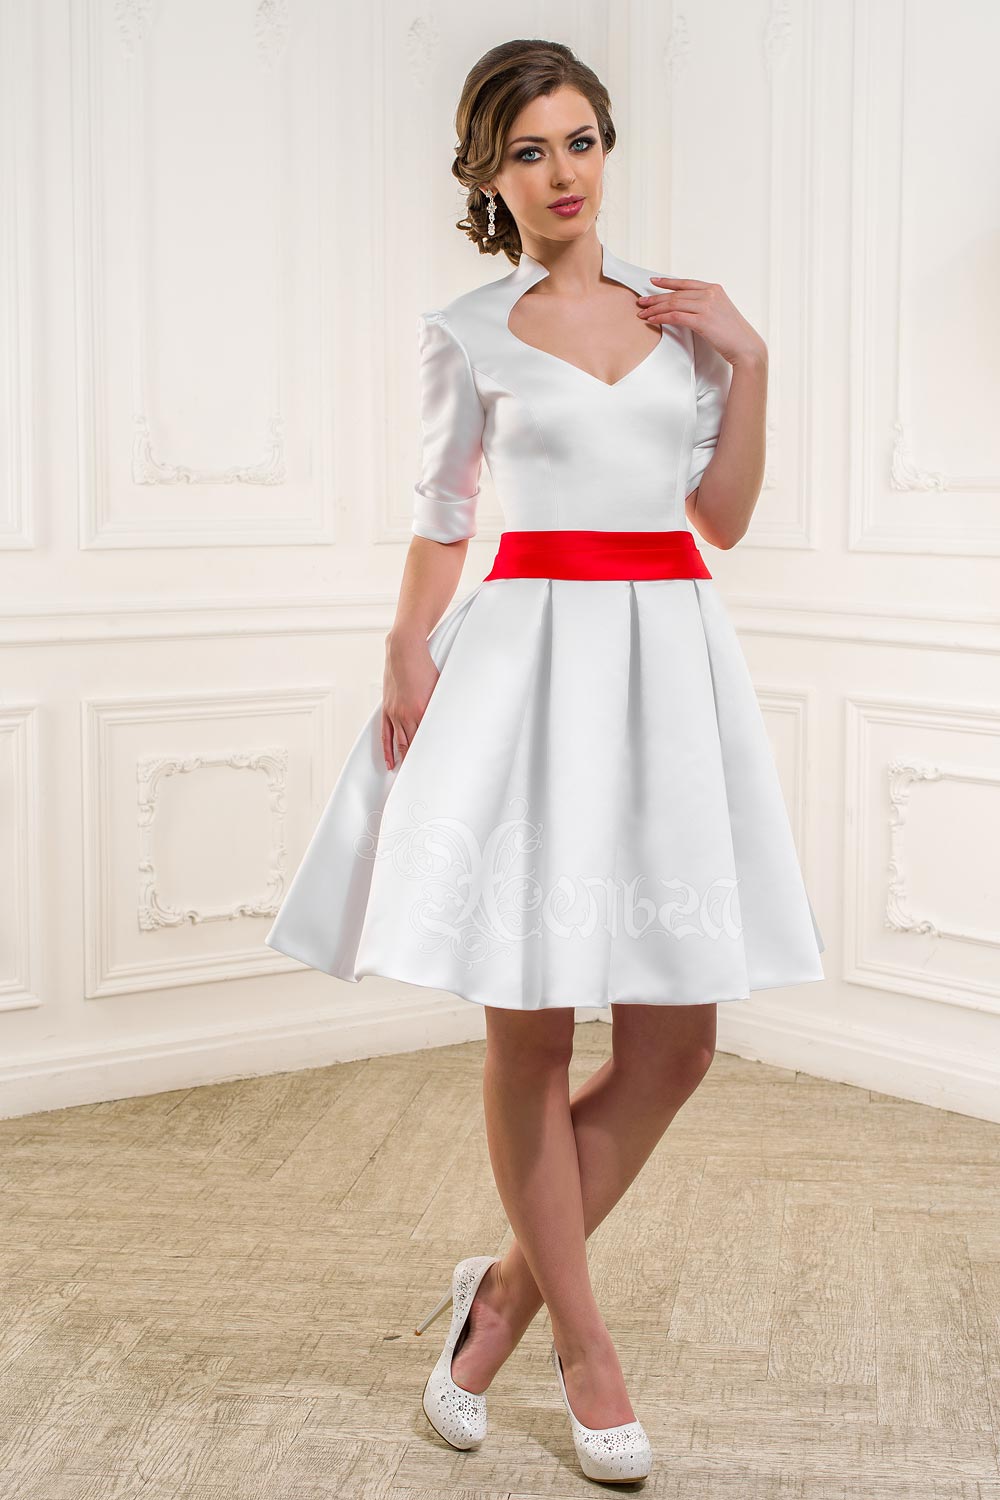 Платье с красным поясом. Белое платье. Красно белое платье. Платье с поясом. Белое короткое платье с красным поясом.